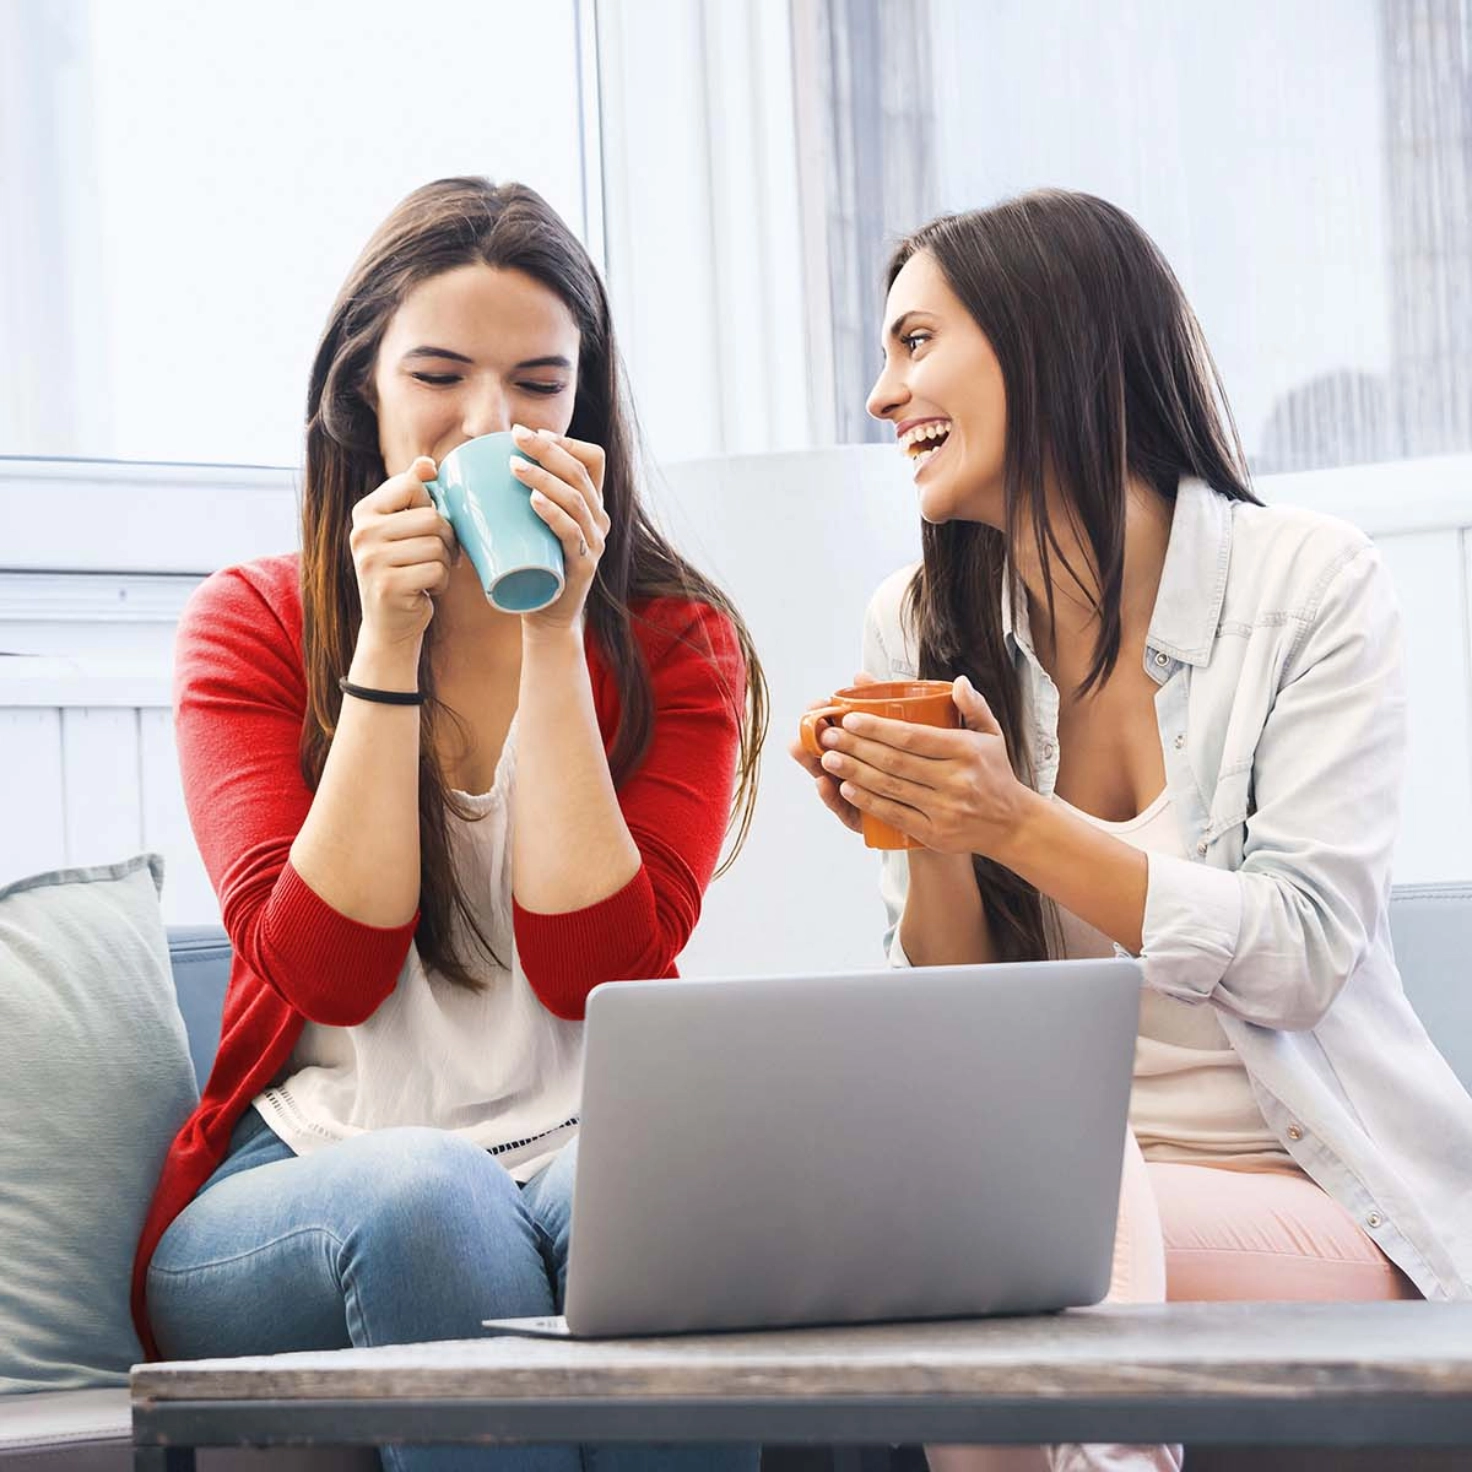 Deux femmes sont assises sur le canapé devant une tasse de café et discutent. Un ordinateur portable est ouvert sur la table devant elles.